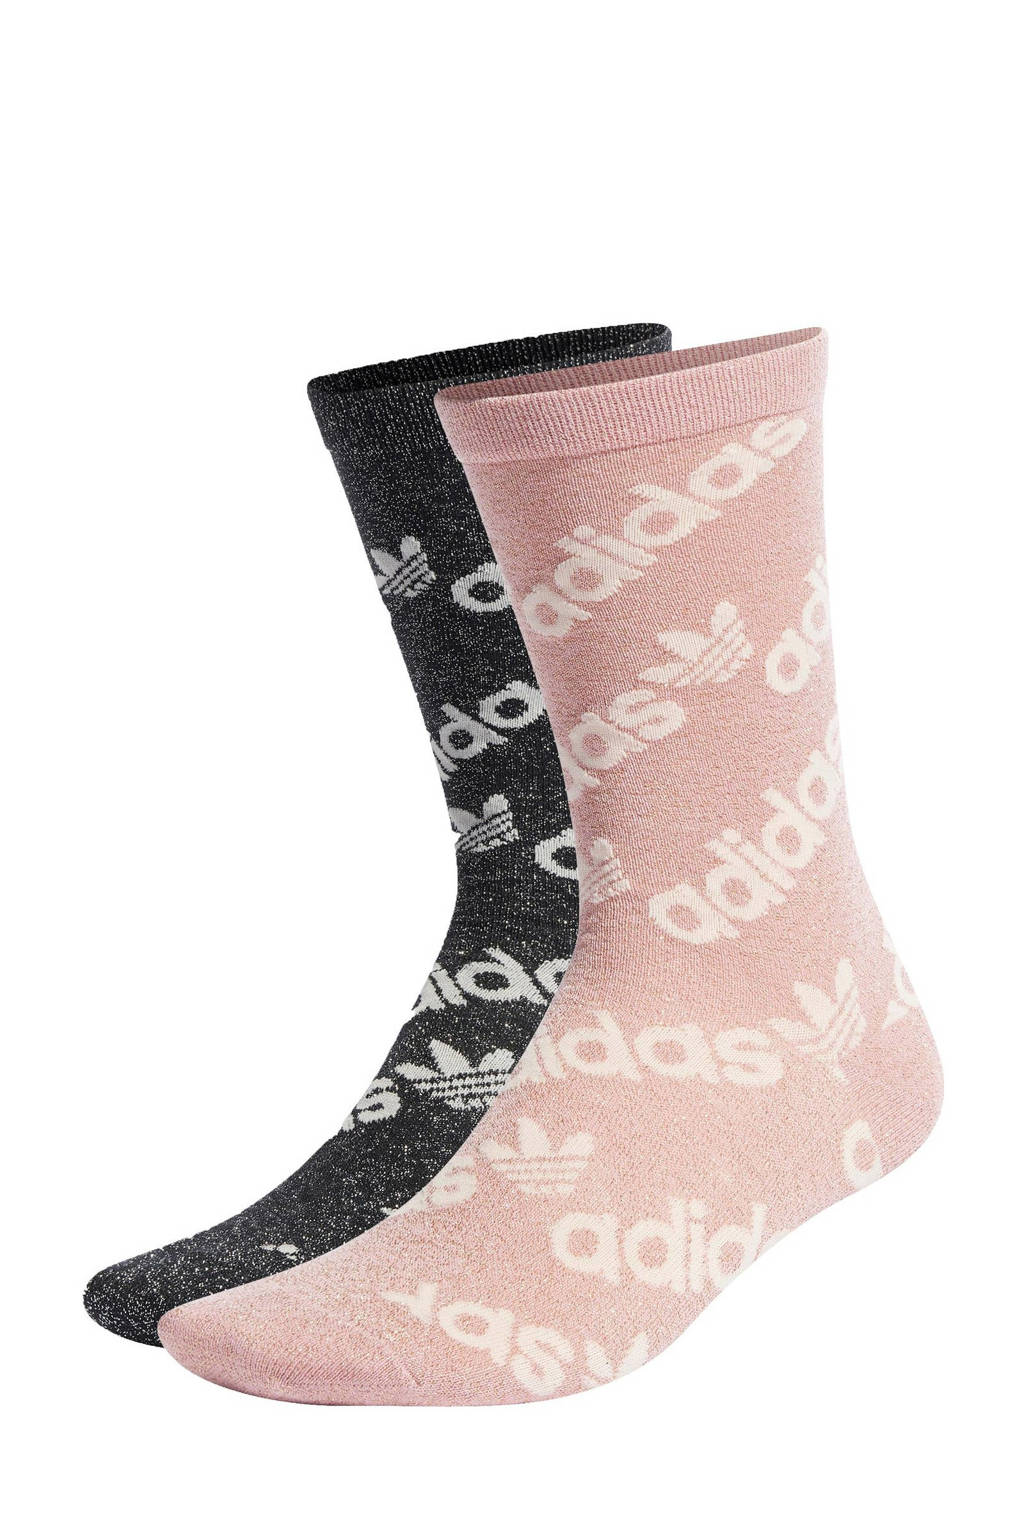 adidas Originals sokken - set van 2 Crew socks lichtroze/zwart, Lichtroze/zwart